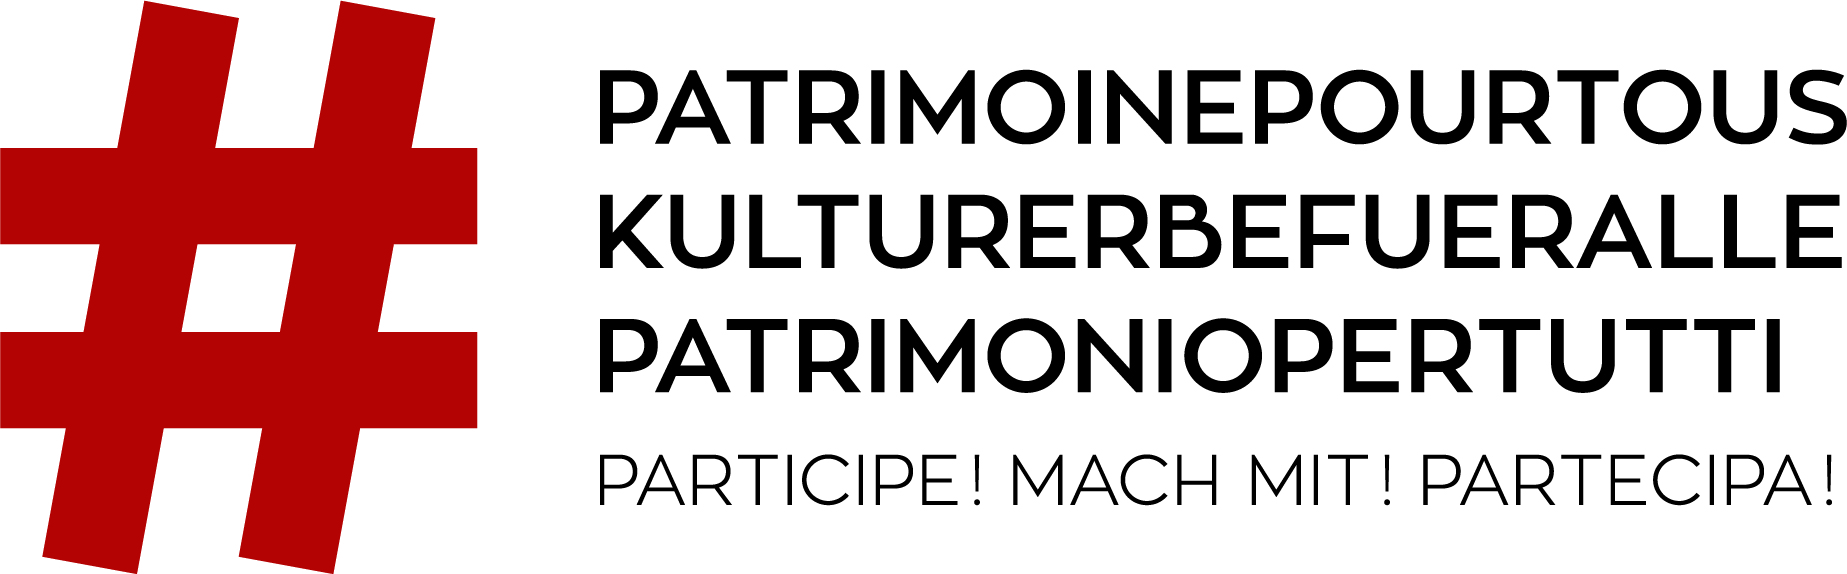 20_20_20_Patrimoinepourtous_Logo_CMYK_Rouge